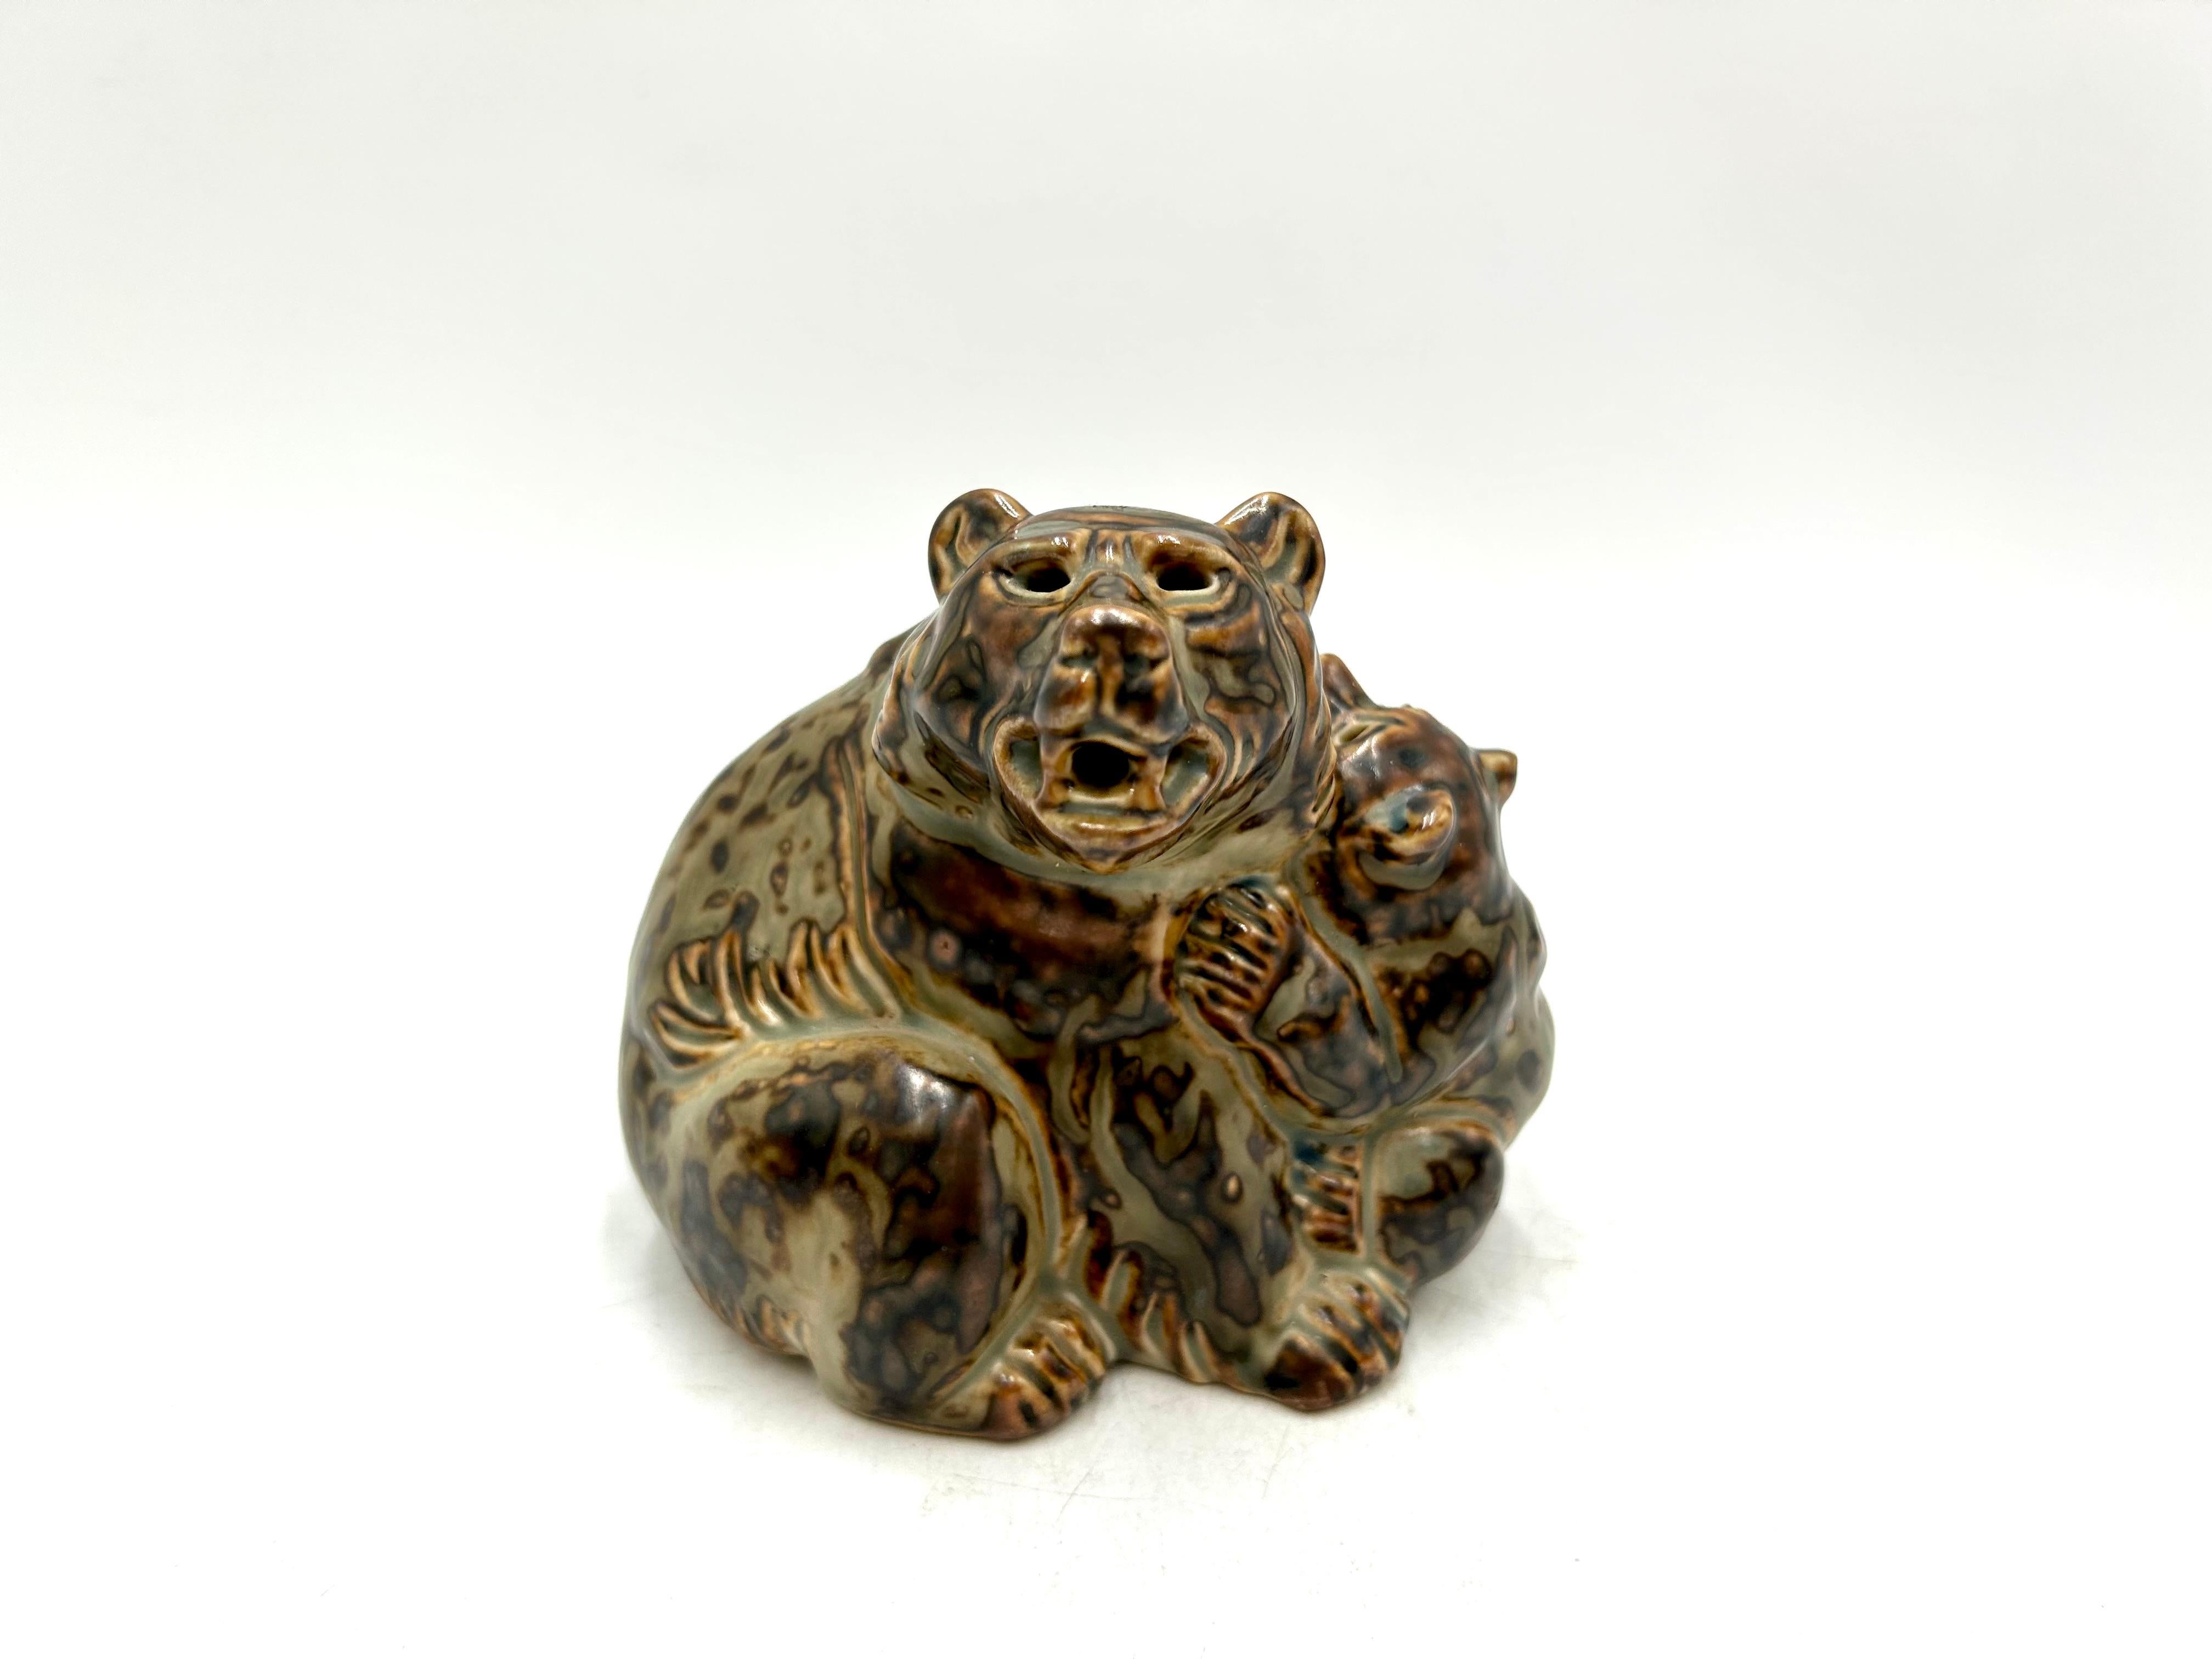 Figurine en porcelaine représentant un ours et son ourson, conçue par Knud Kyhn pour Royal Copenhagen.

Produit en 1960. Très bon état, aucun dommage.

Mesures : hauteur 11cm, largeur 11cm, profondeur 8cm.